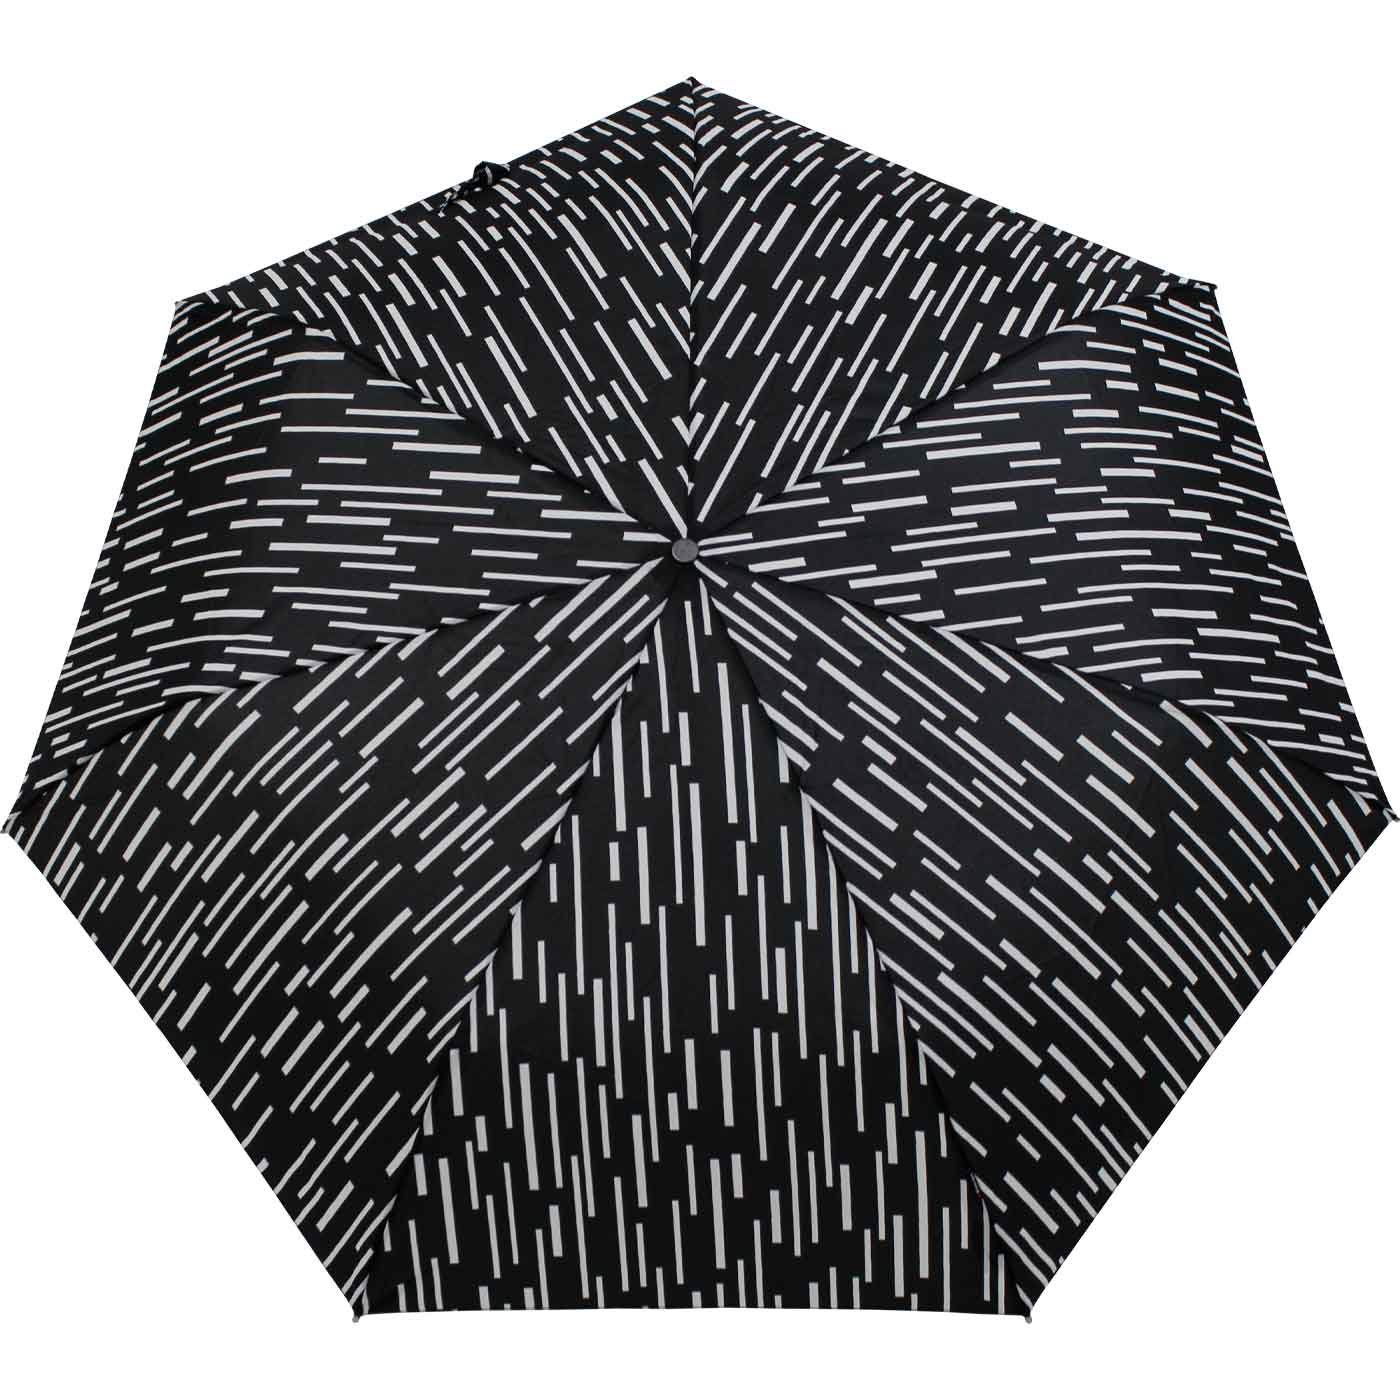 Slim in NUNO, Knirps® jede passt immer Tasche Taschenregenschirm rain dabei, - Duomatic Auf-Zu-Automatik mit mit